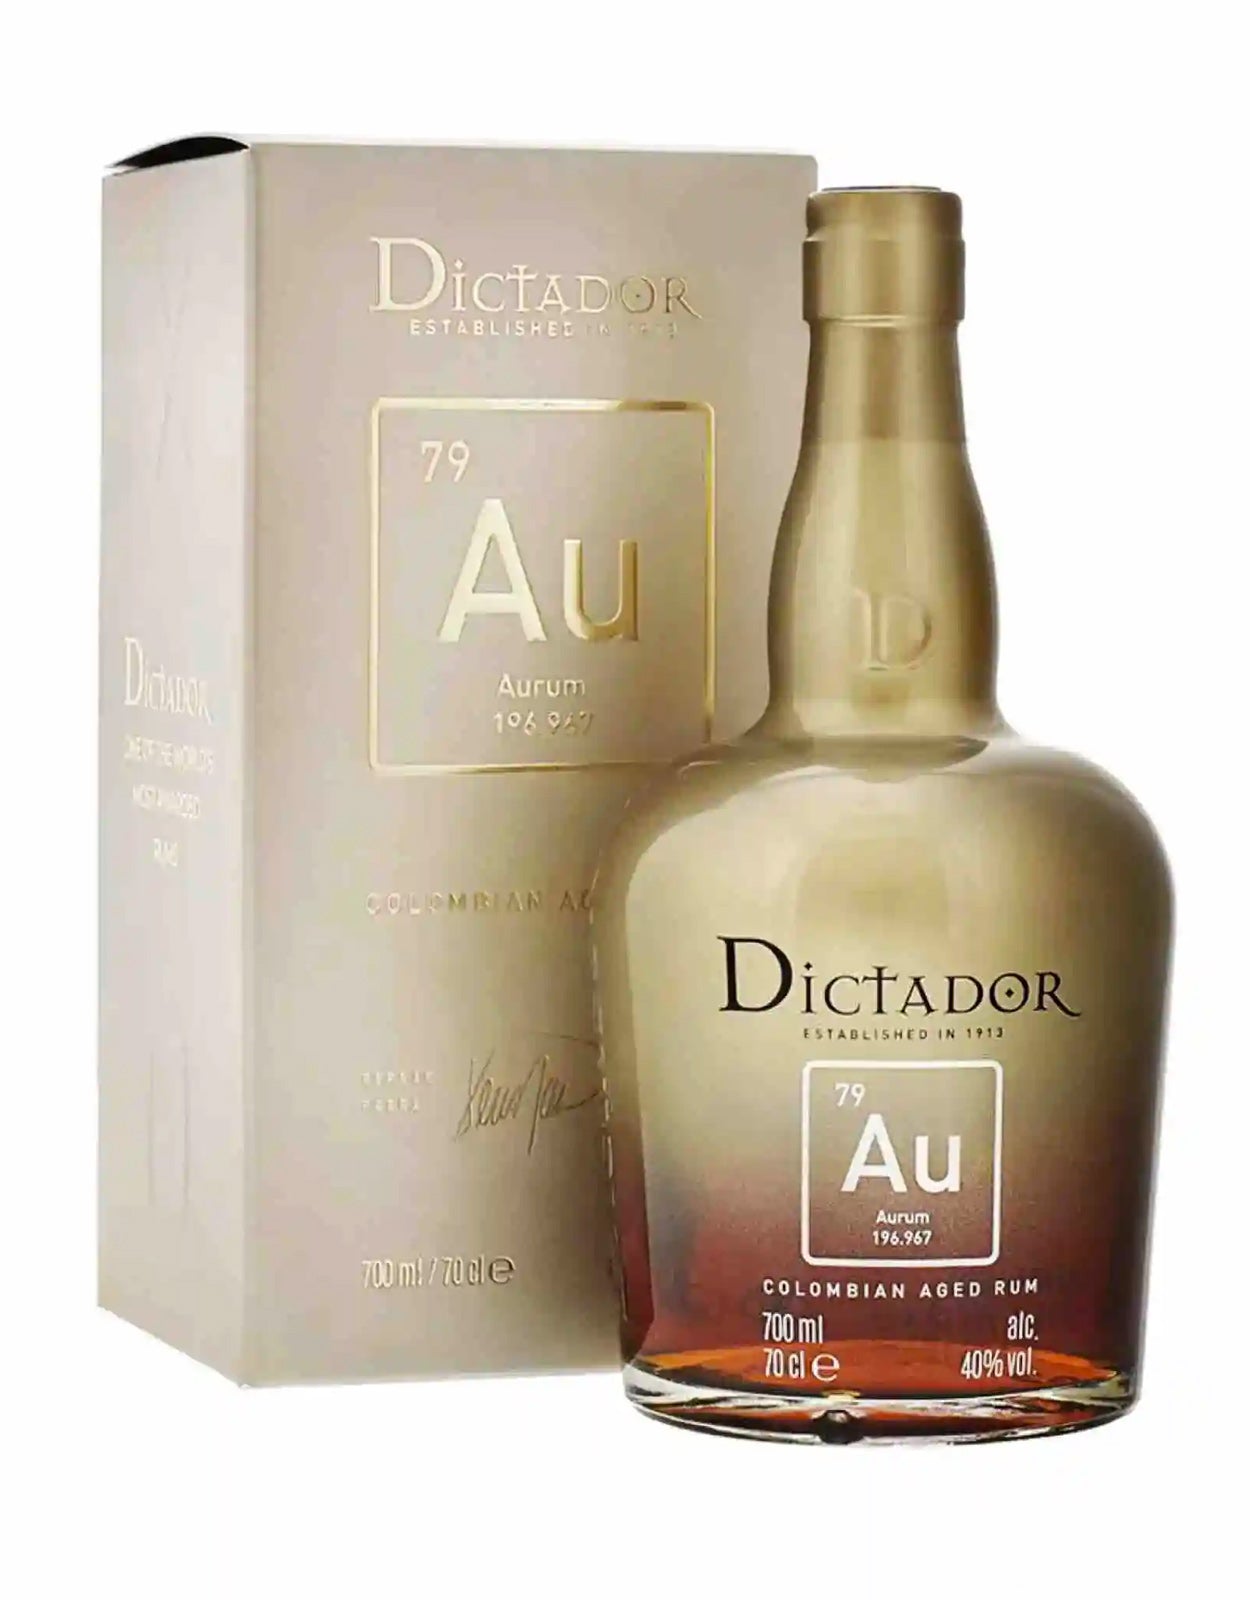 Dictador XO Aurum Rum